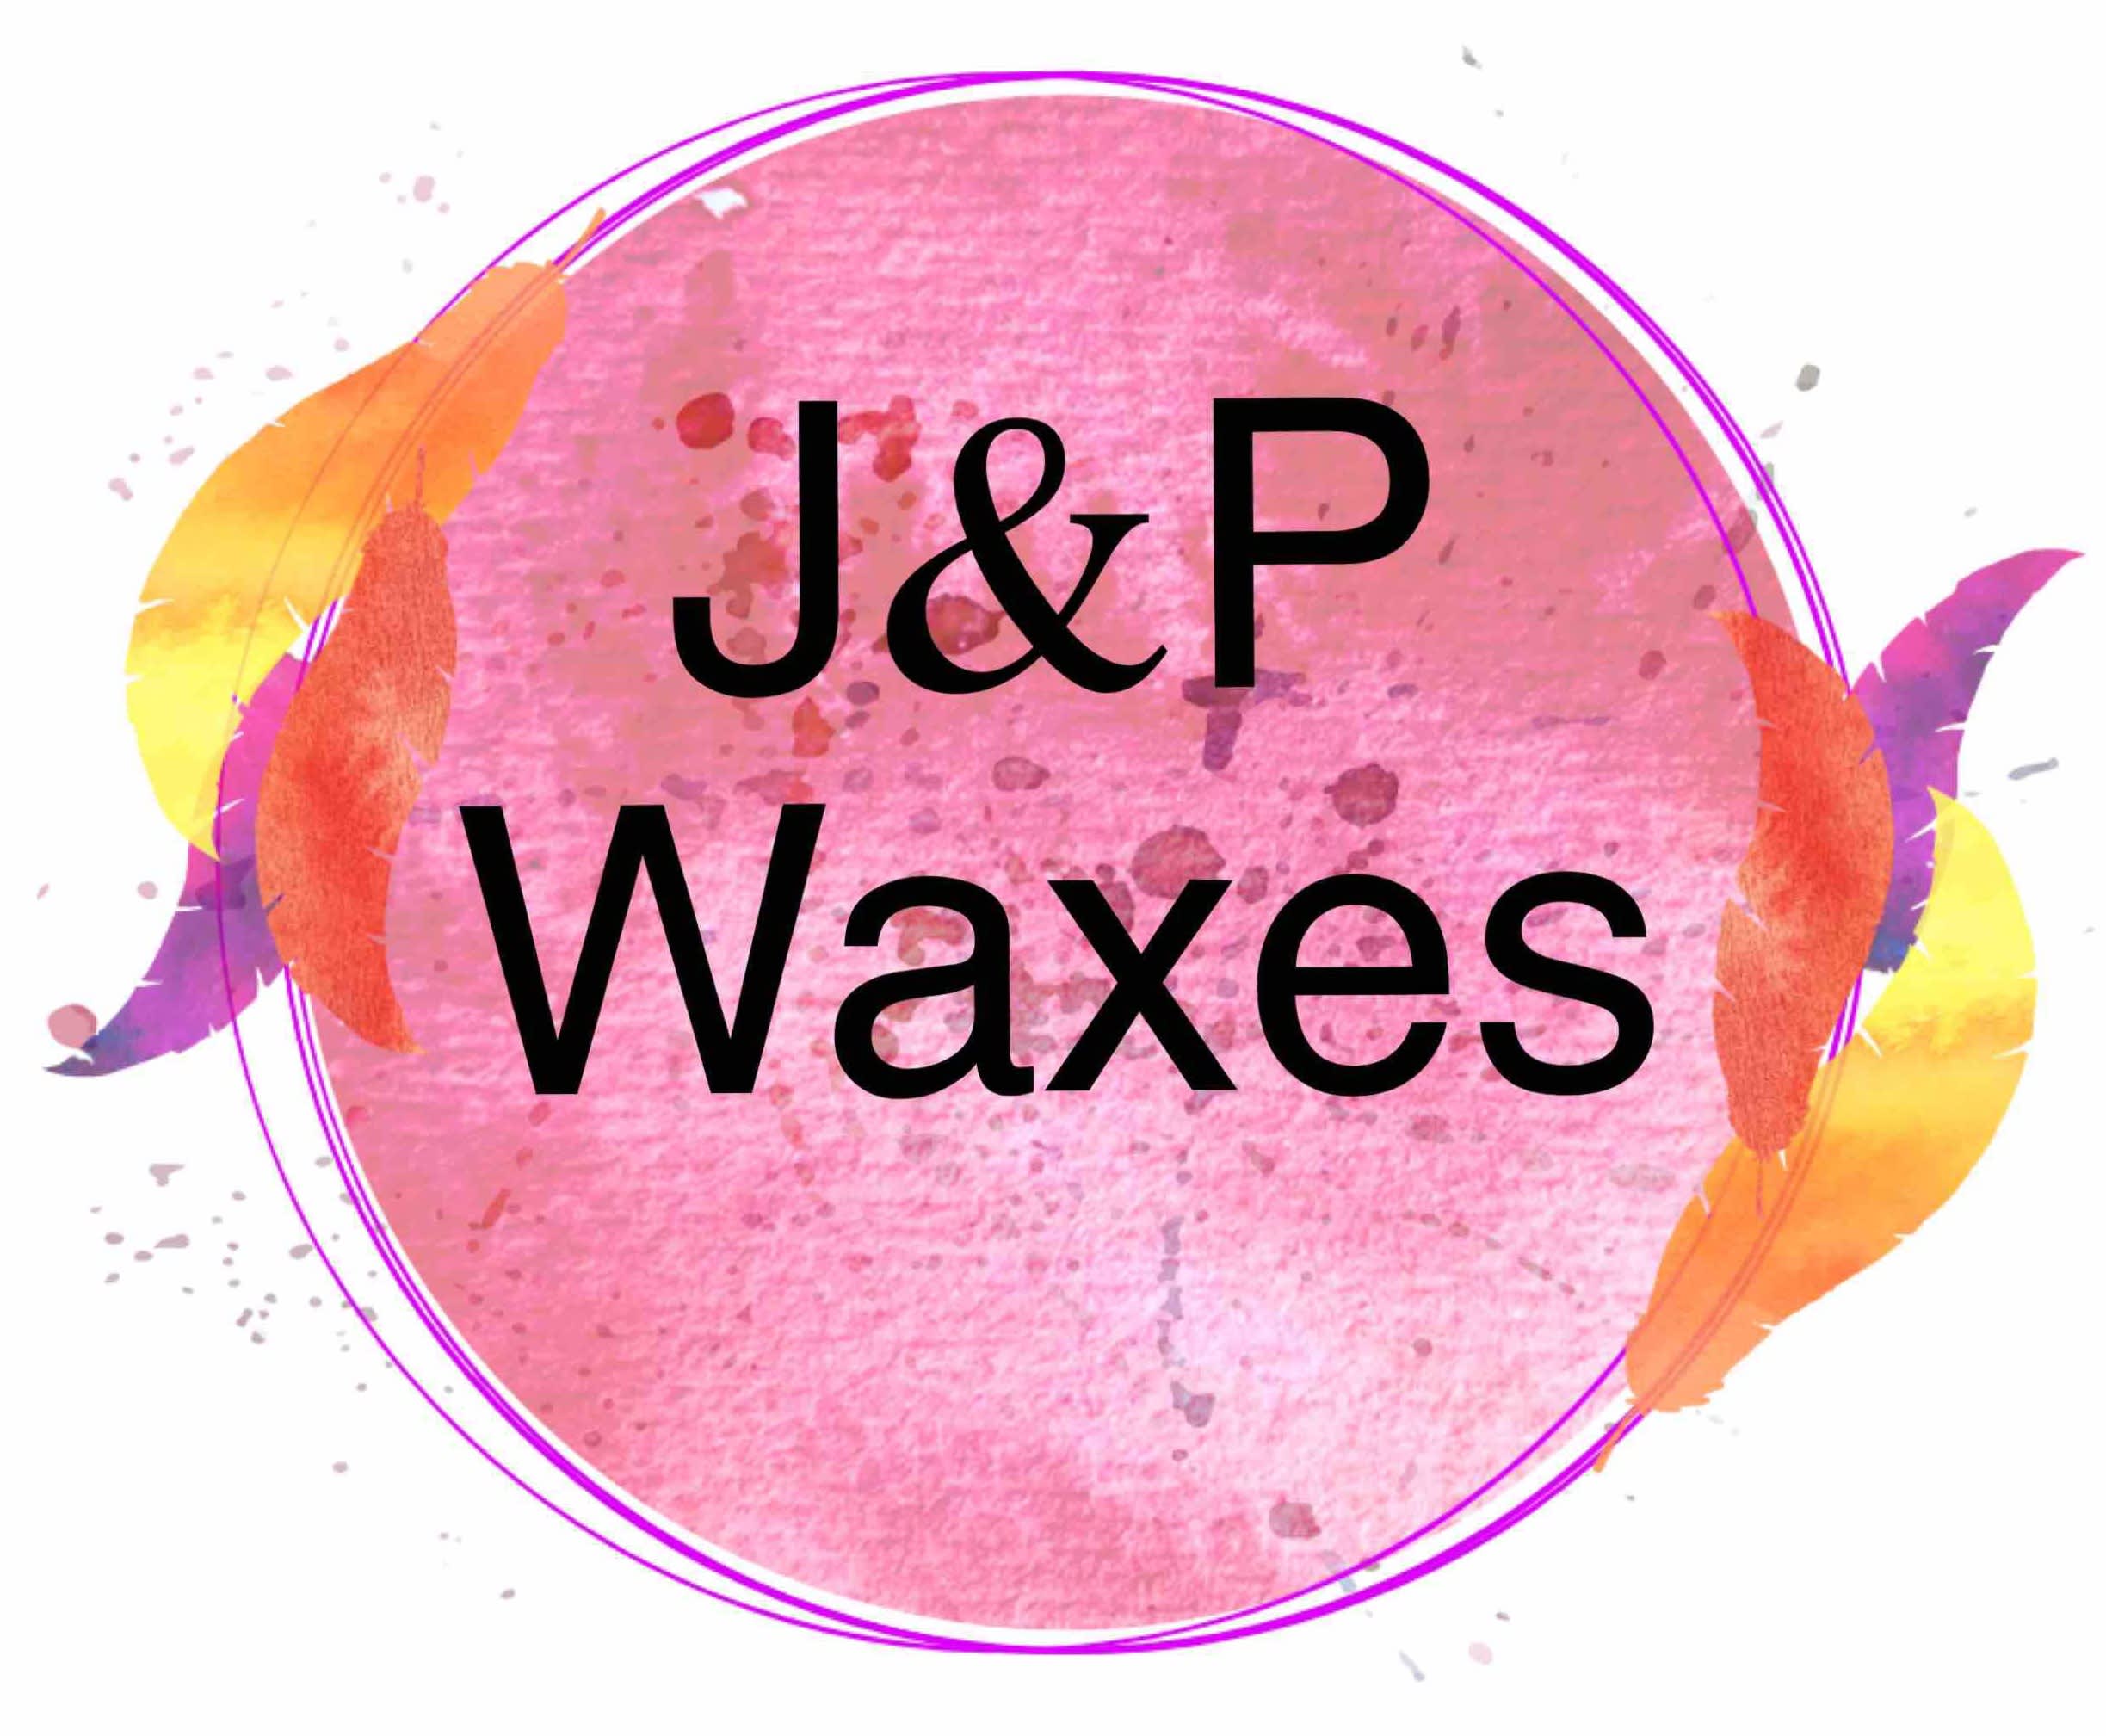 J&P Waxes